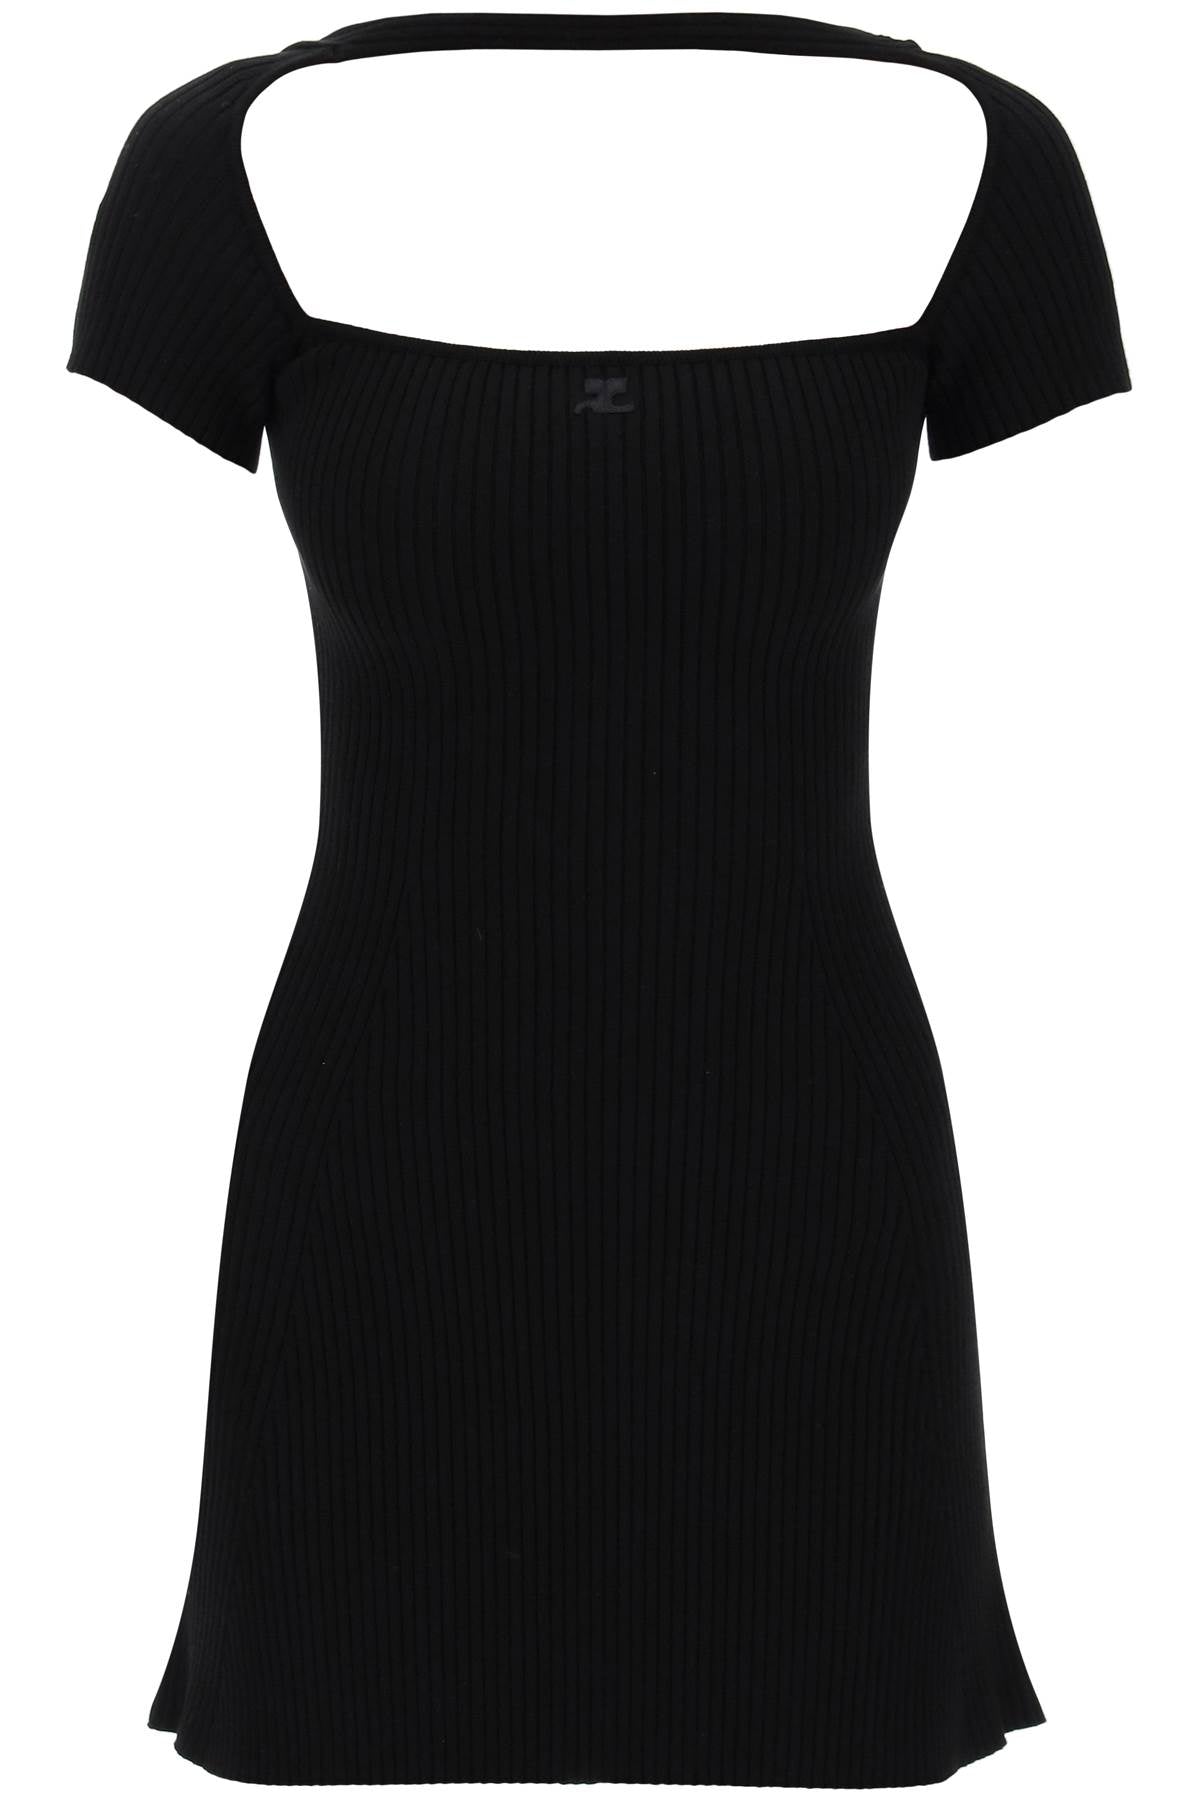 女士黑色罗纹T恤裙 - A型剪裁与同色刺绣标志